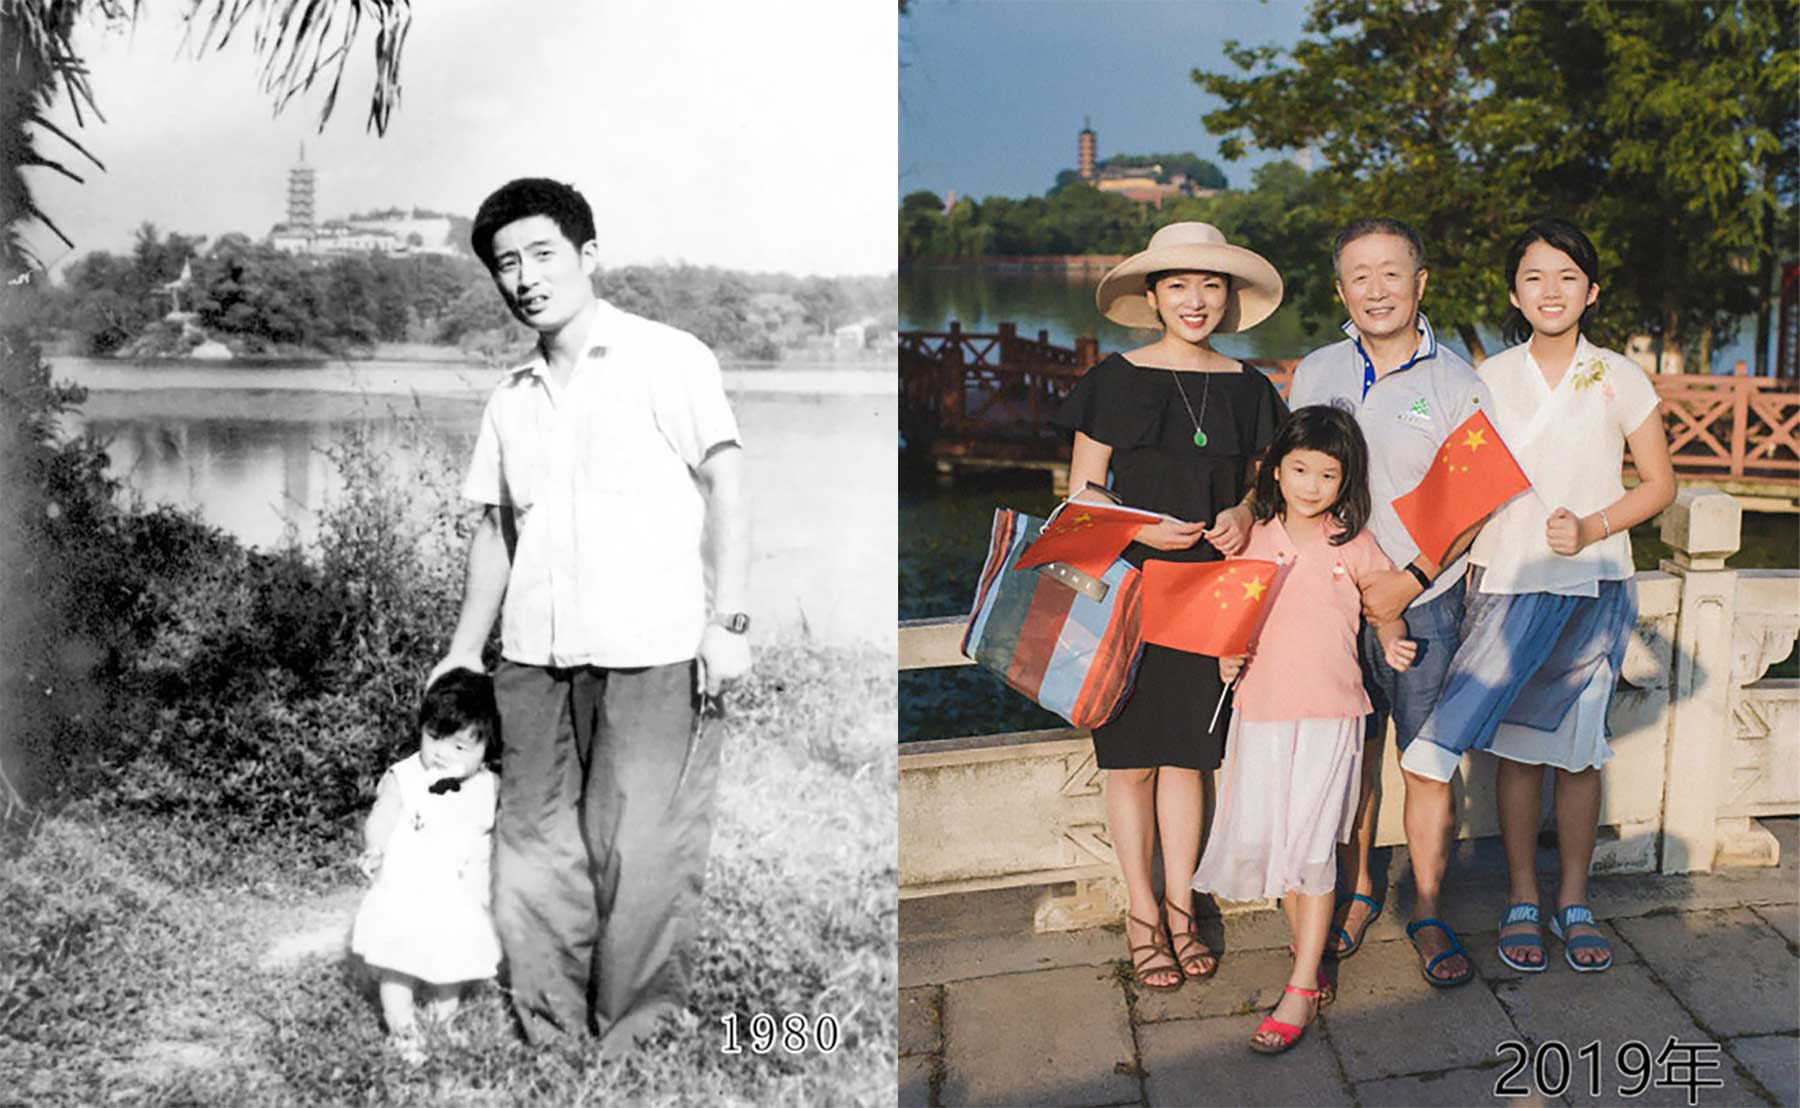 Vater und Tochter machen seit 1980 jährlich ein Foto am gleichen Ort Vater-Tochter-40-Jahre-portraits-gleicher-ort_Hua-Yunqing_00 